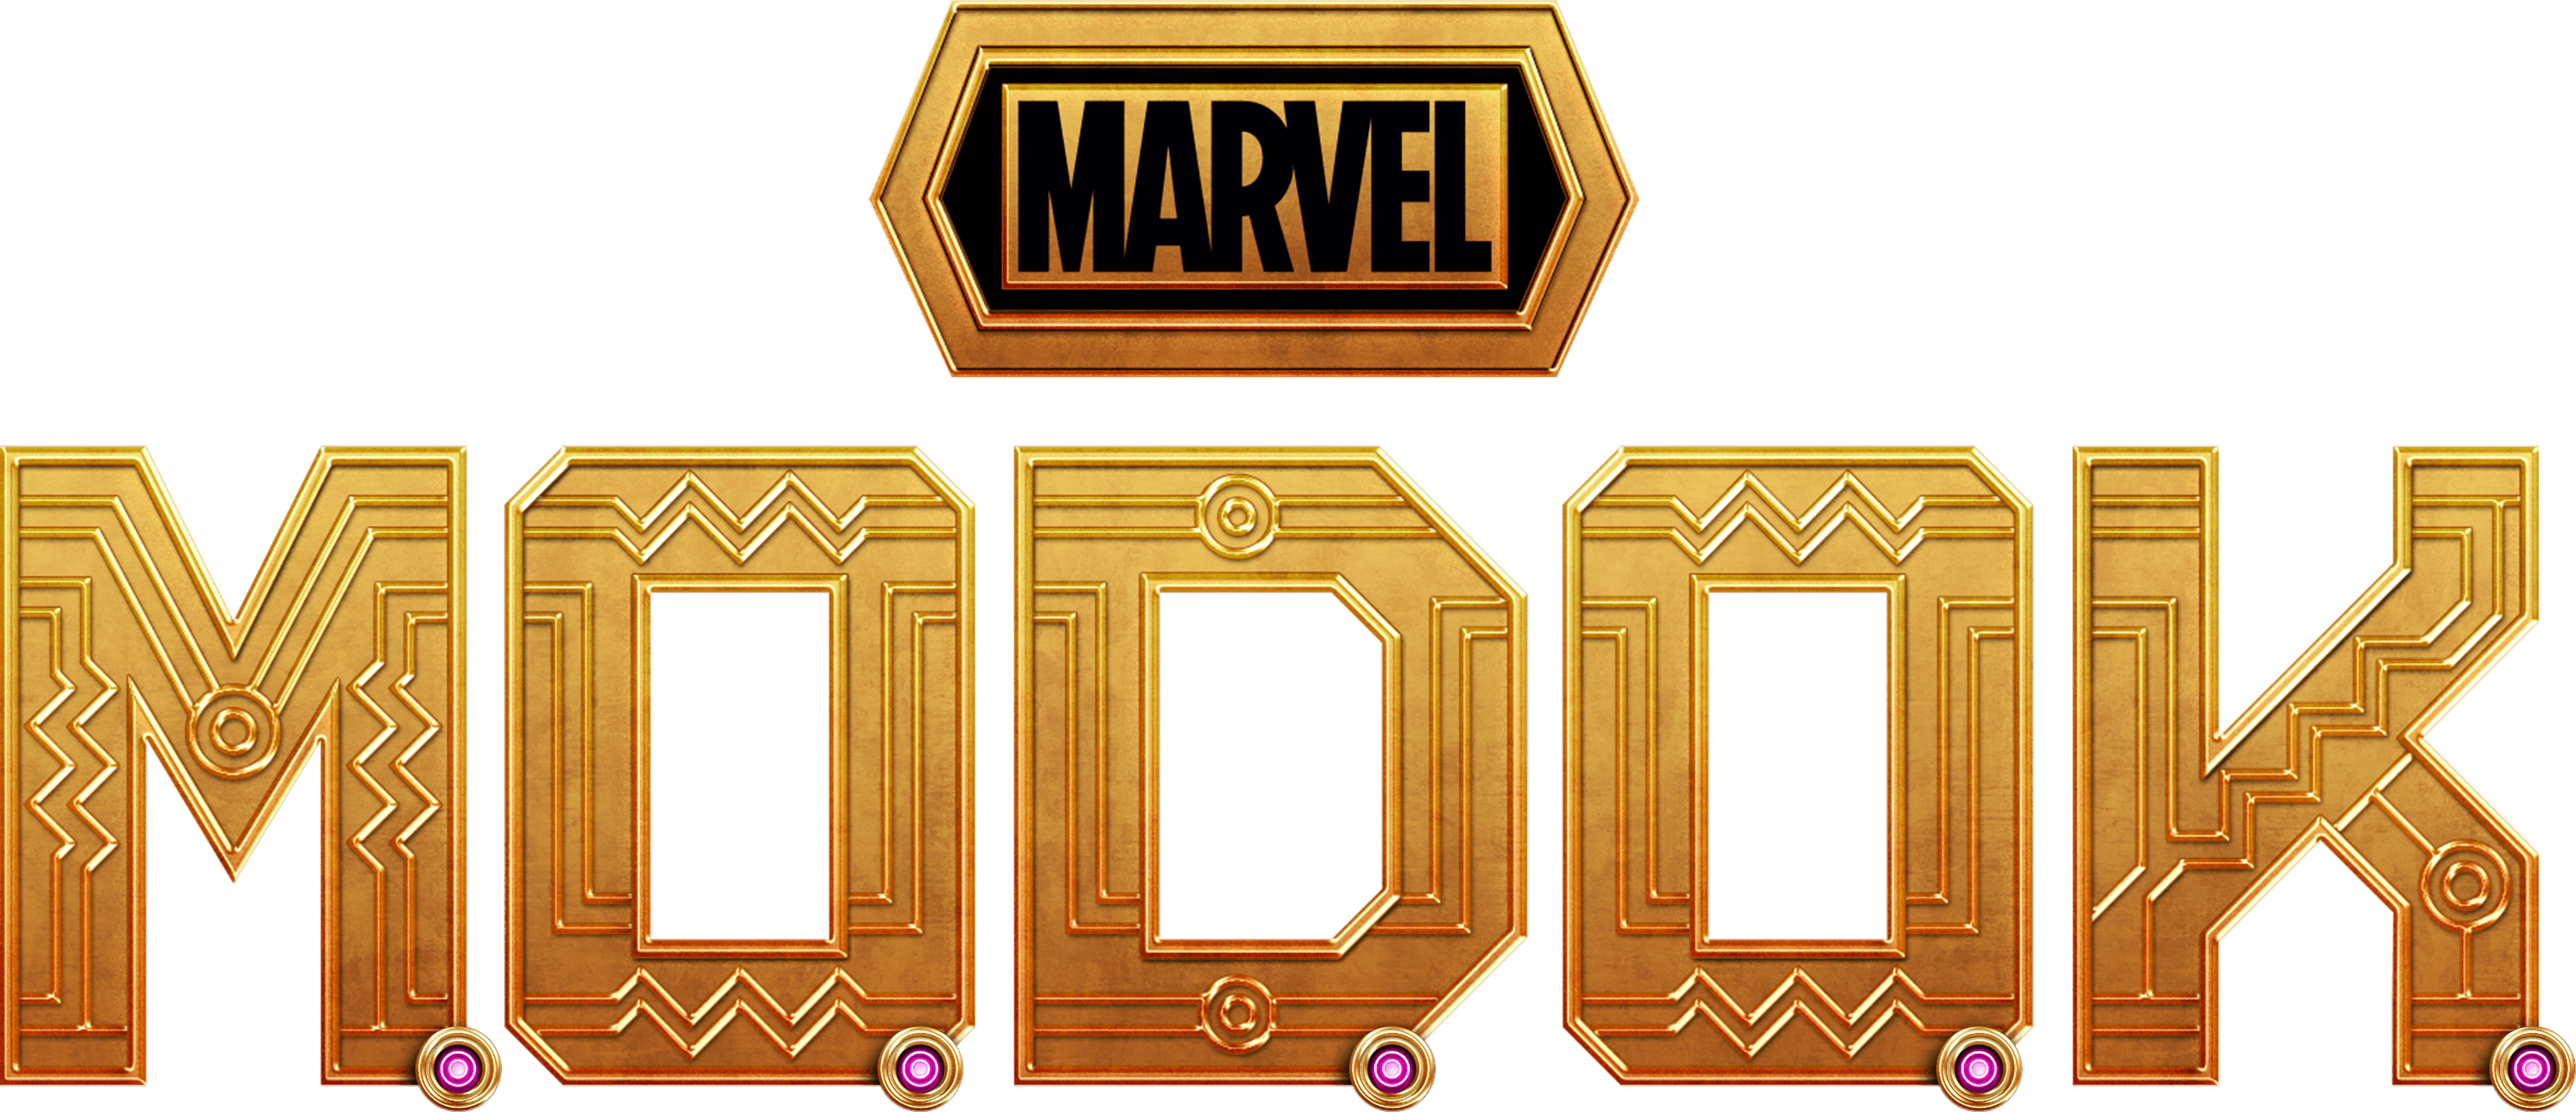 Marvel's M.O.D.O.K. logo